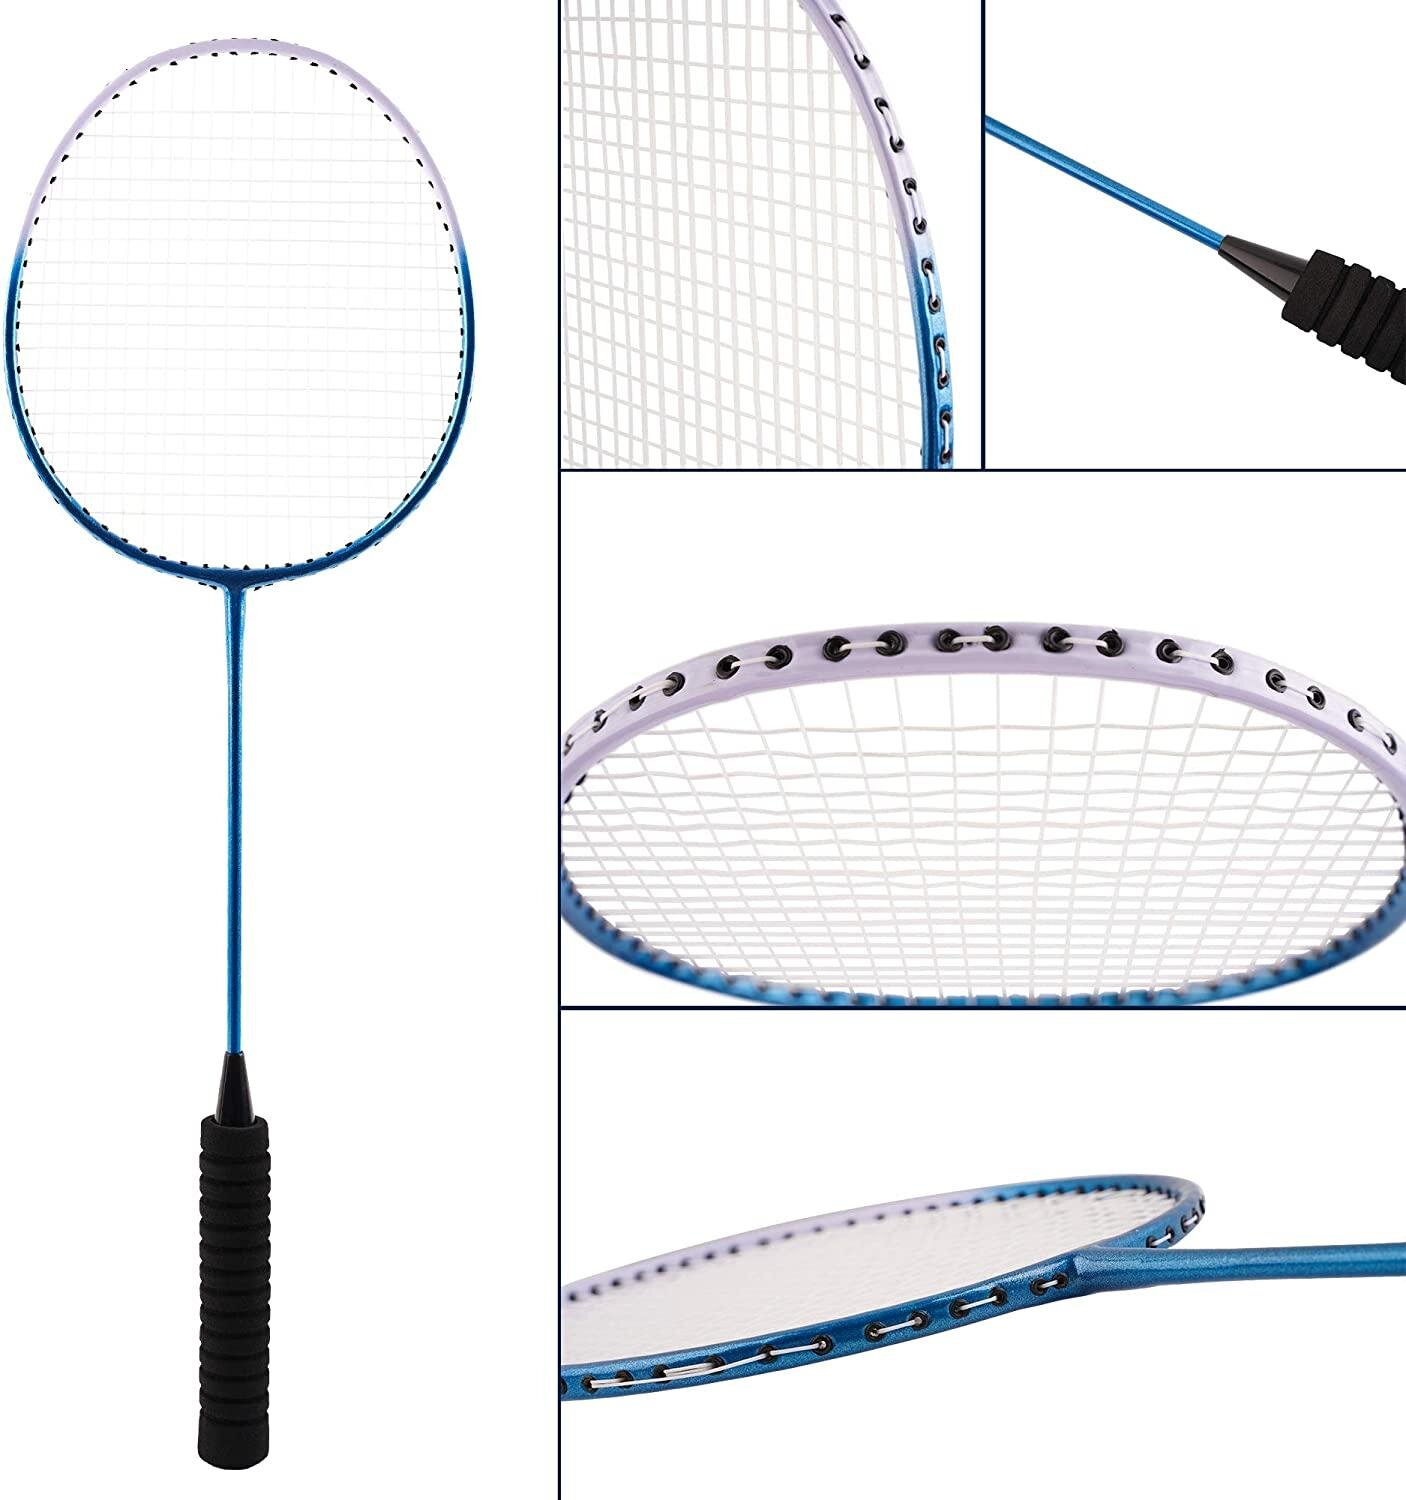 Portable Badminton Racket Greece, SAVE 46%